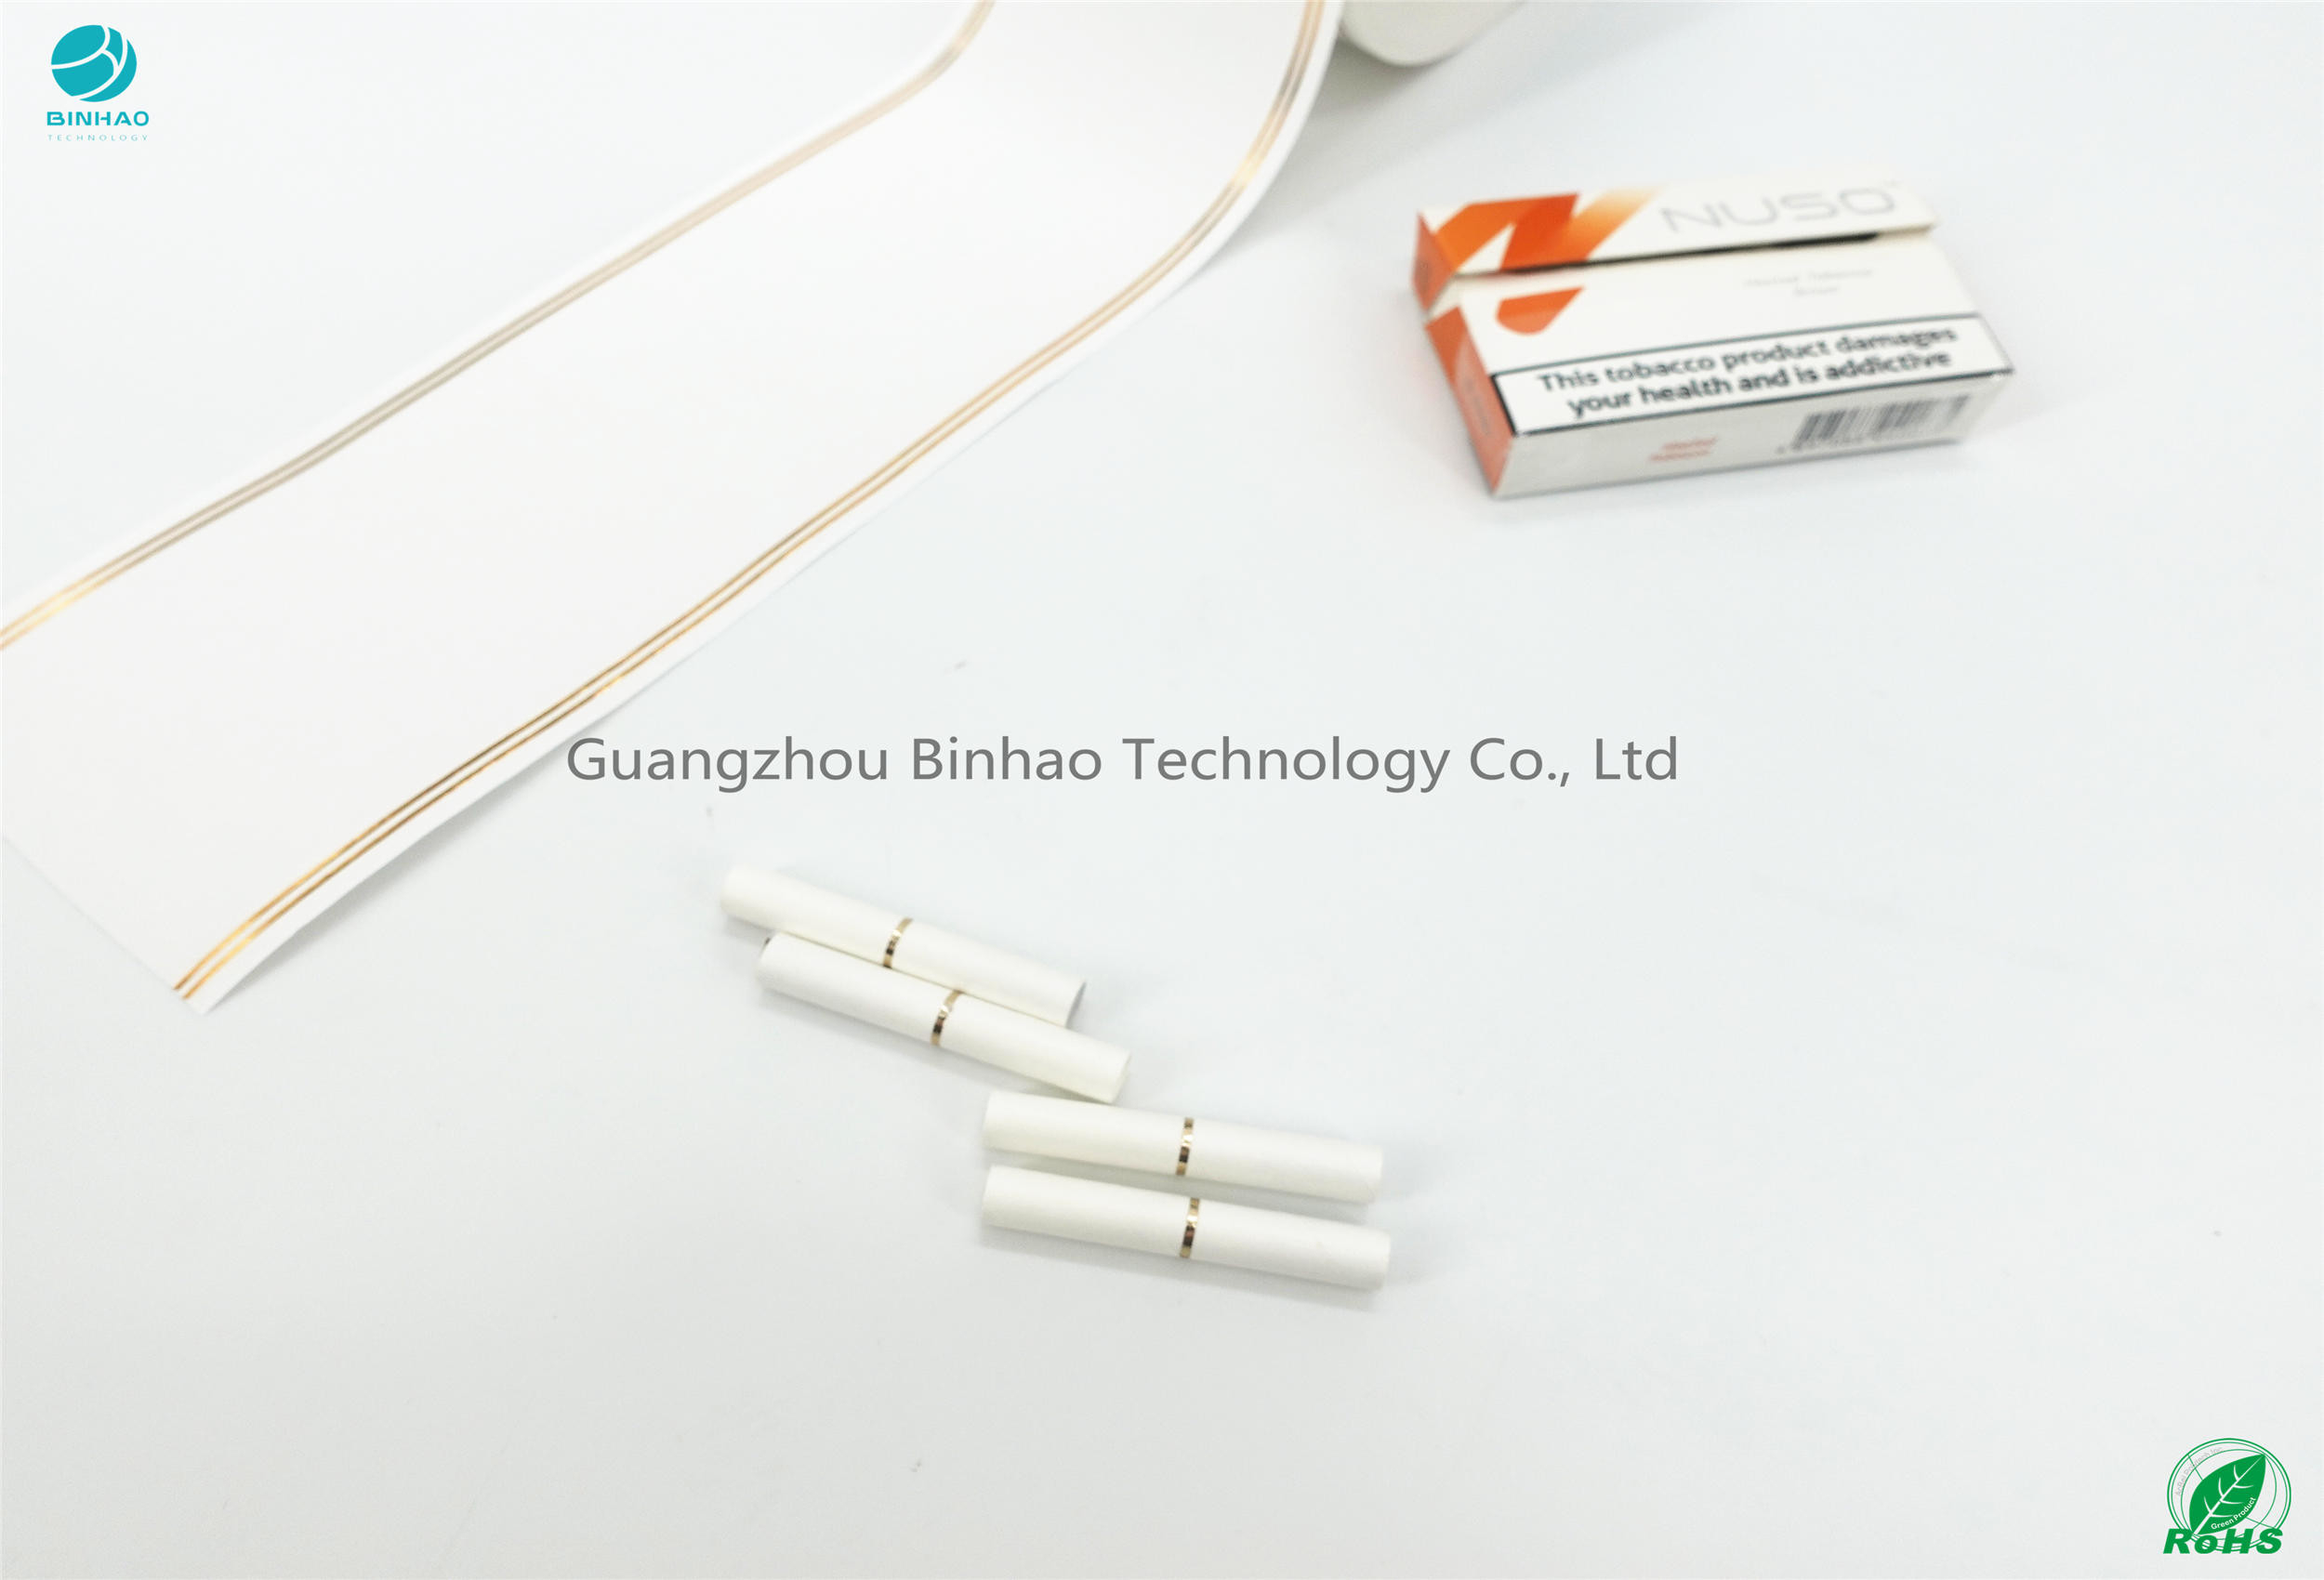 Bahşiş Kağıdı Altın Engelleme Baskı HNB E-Sigara Paketi Malzemeleri 50mm Boyut